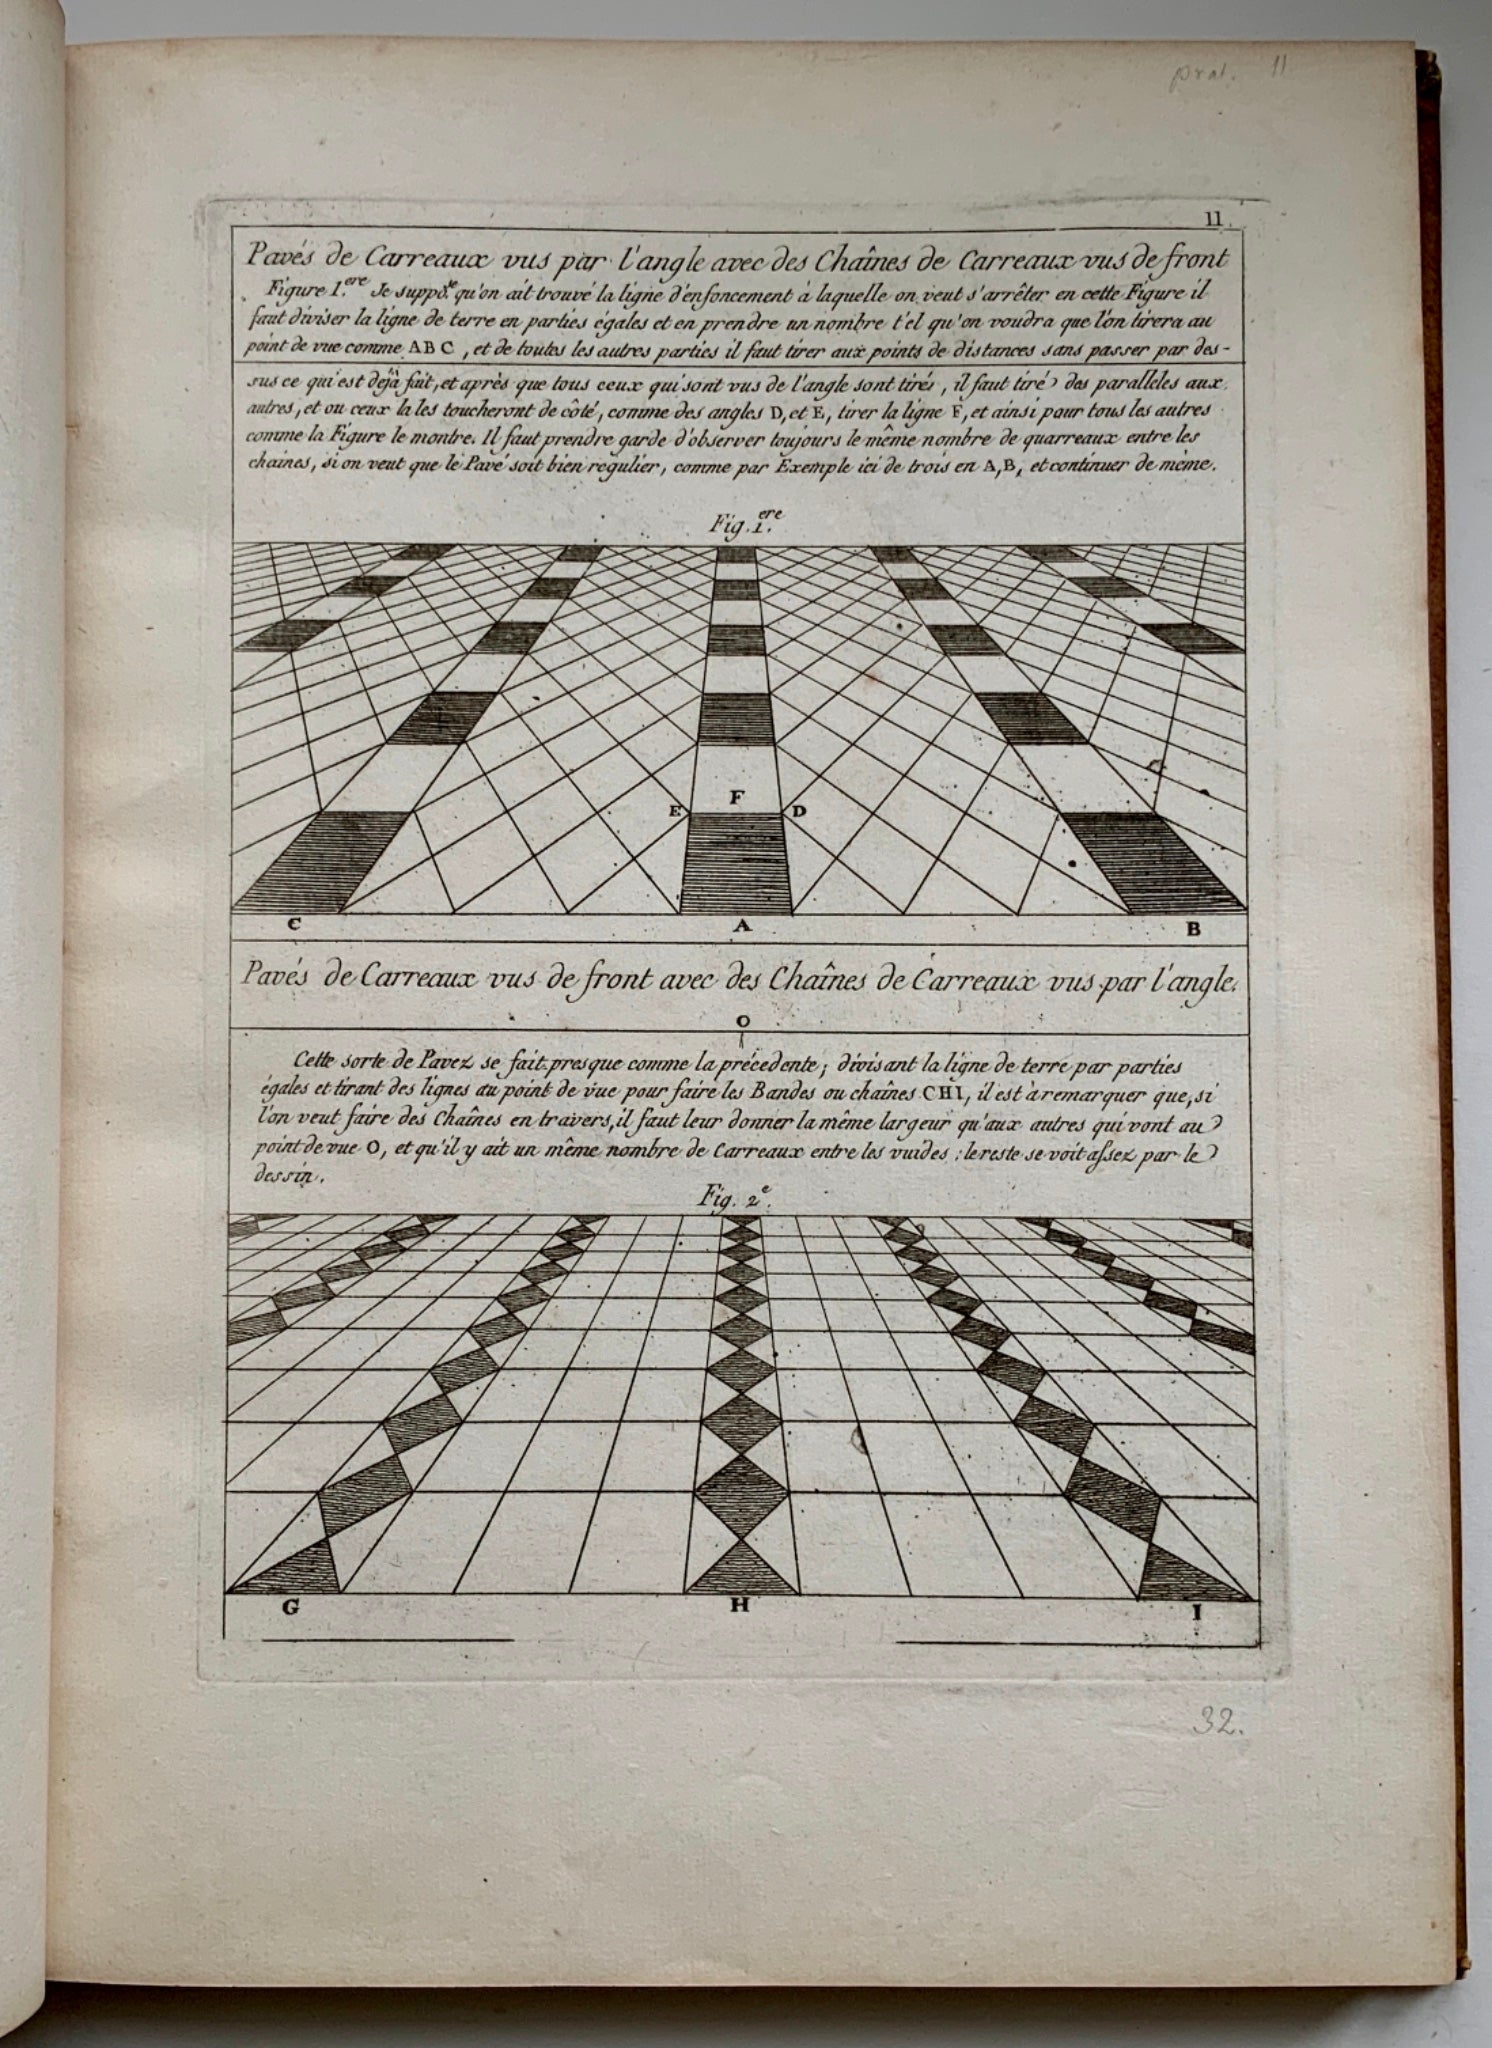 1780 c SOBRO, A. Traité de perspective à l'usage des artistes 76 plates FOLIO - Architecture, Art